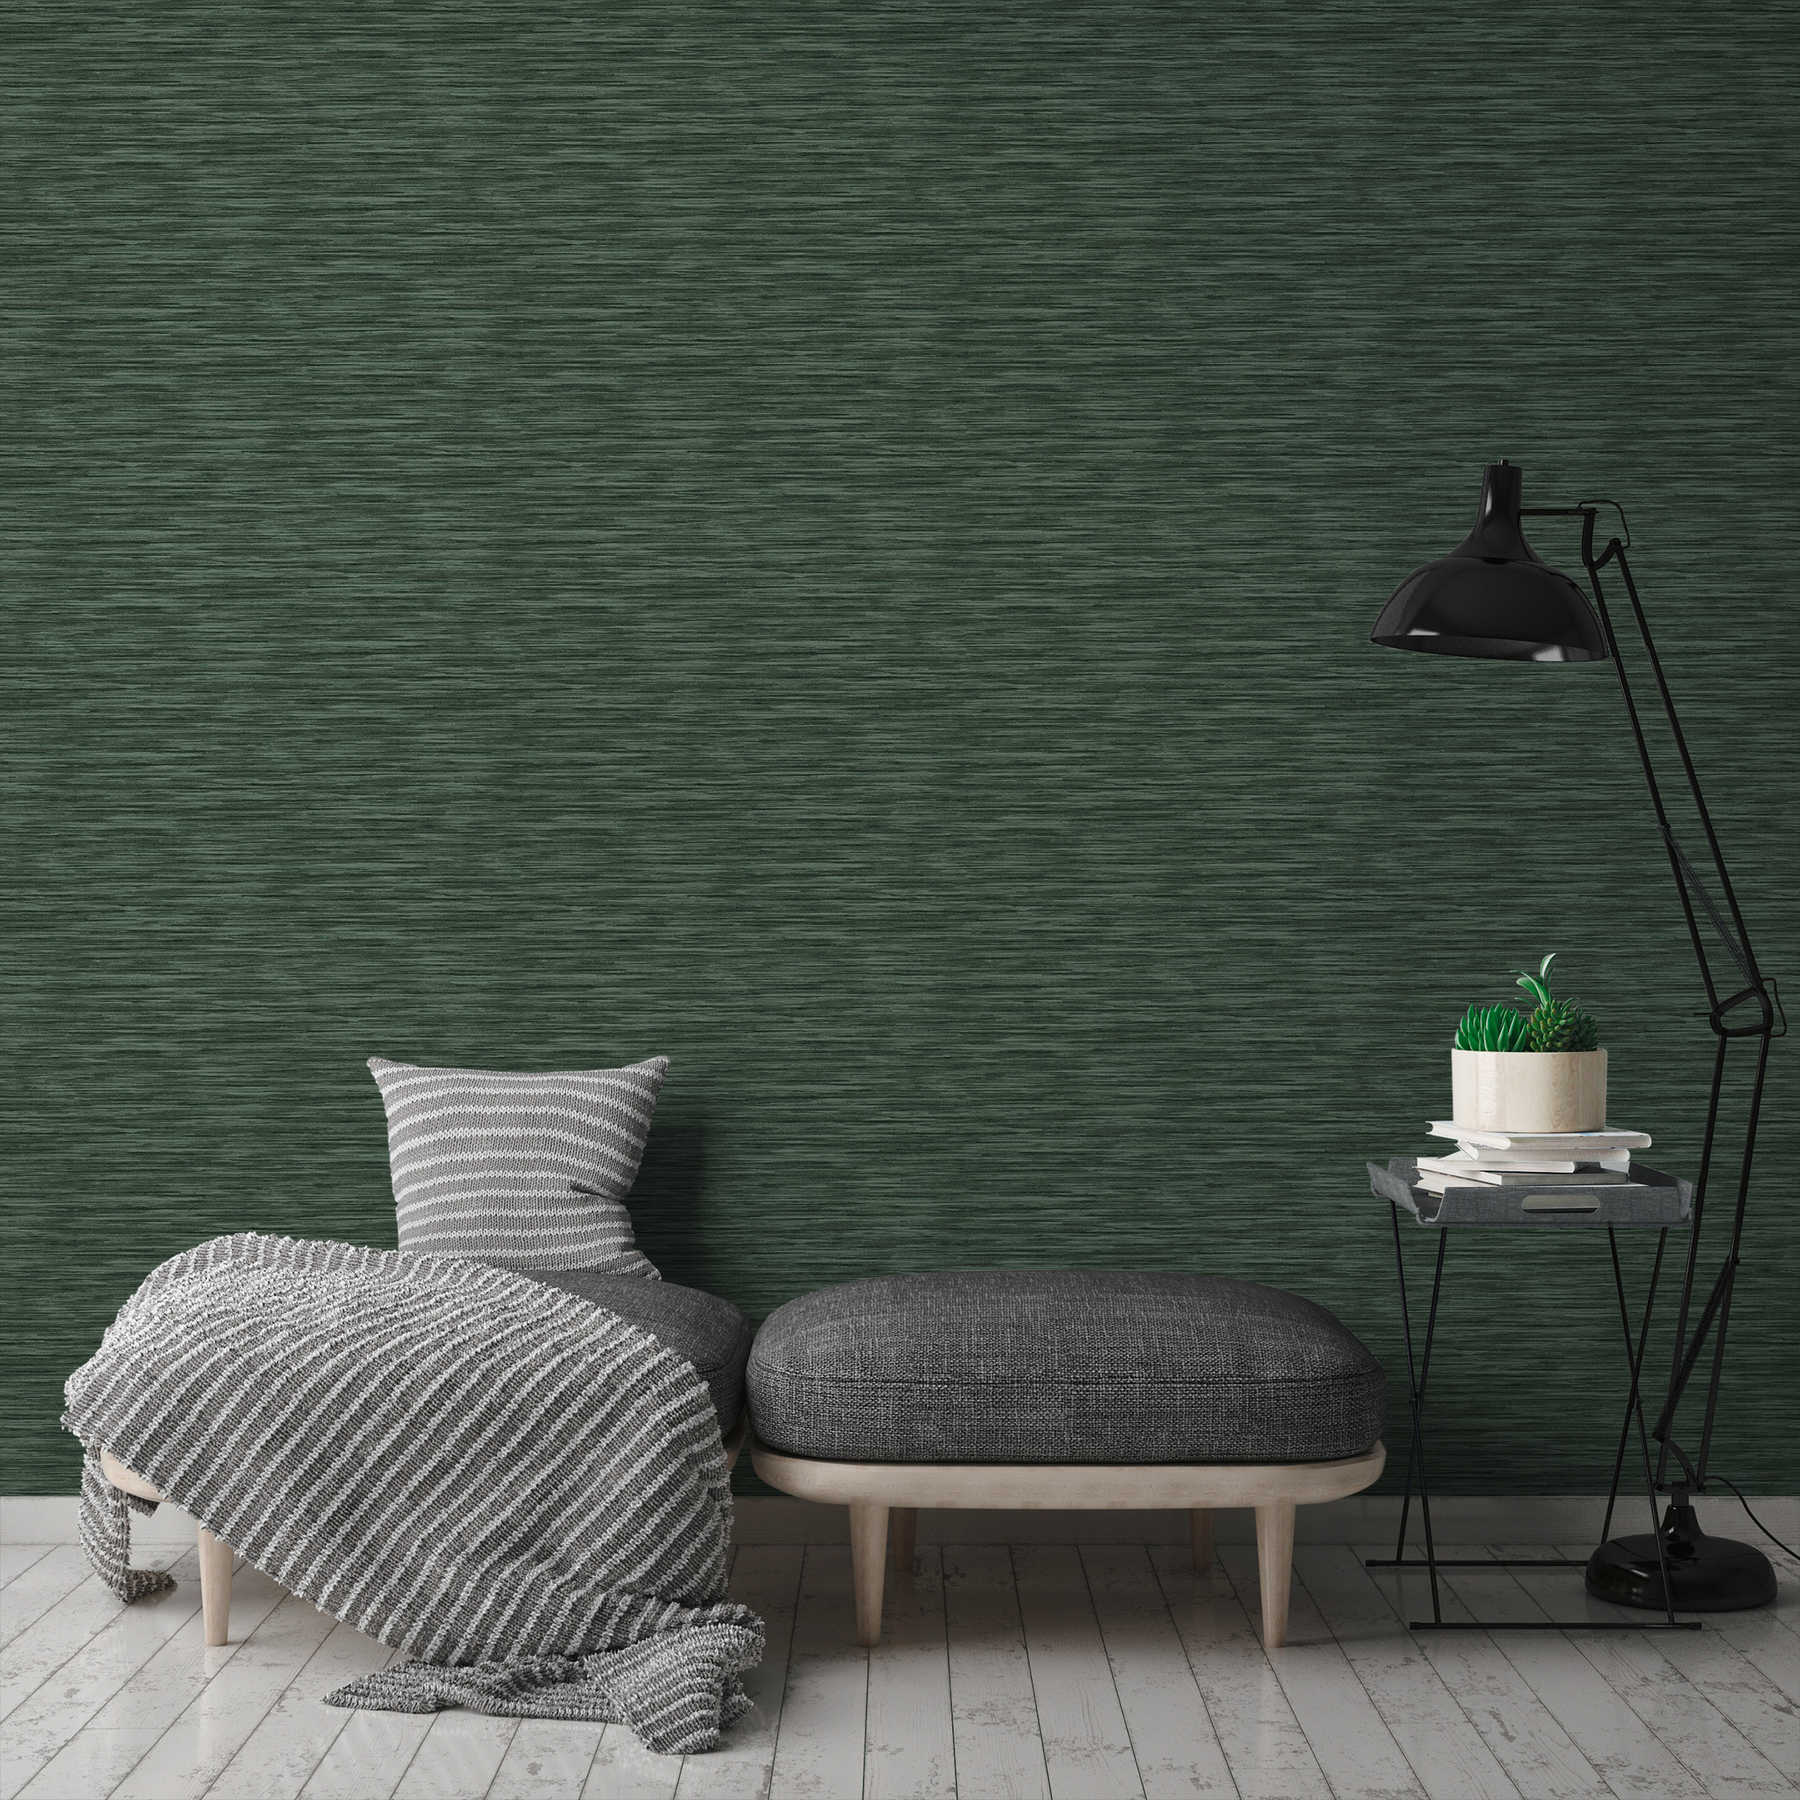             Melange patroon behang met natuurlijke kleur arceringen - groen
        